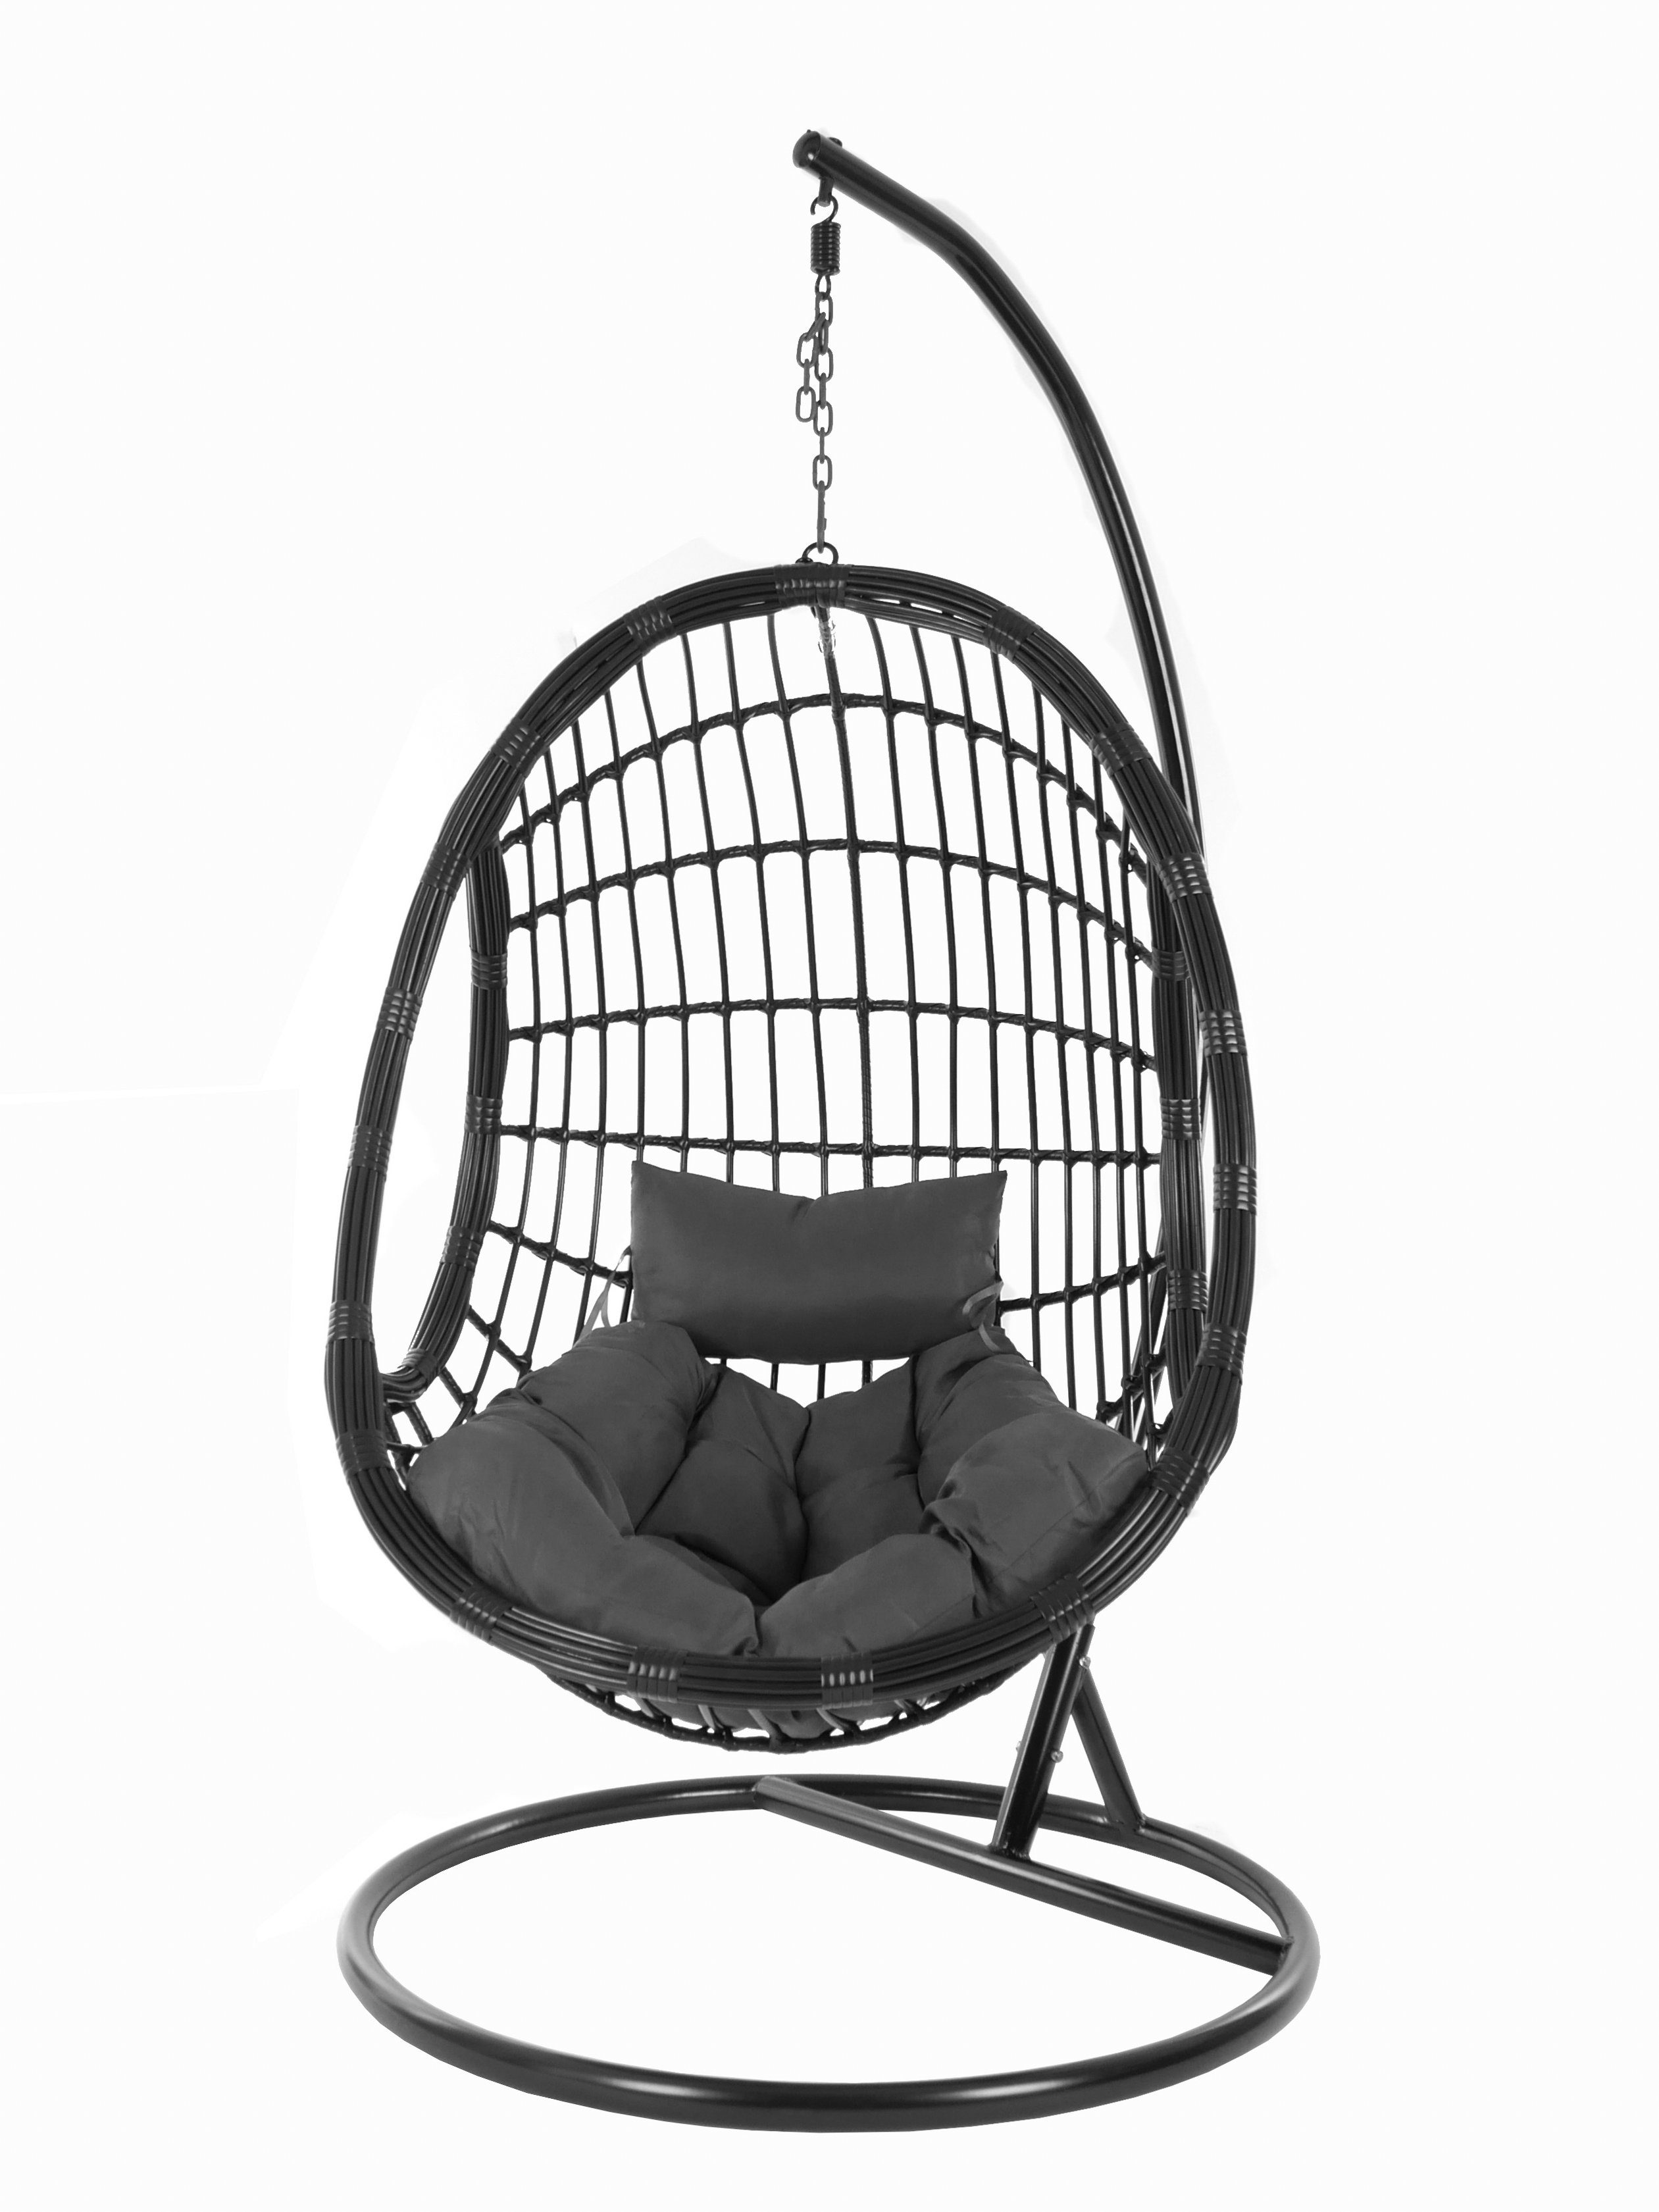 KIDEO Hängesessel PALMANOVA black, Swing schwarz, und shadow) dunkelgrau edles Gestell mit Loungemöbel, Kissen, Hängesessel (8999 Schwebesessel, Chair, Design